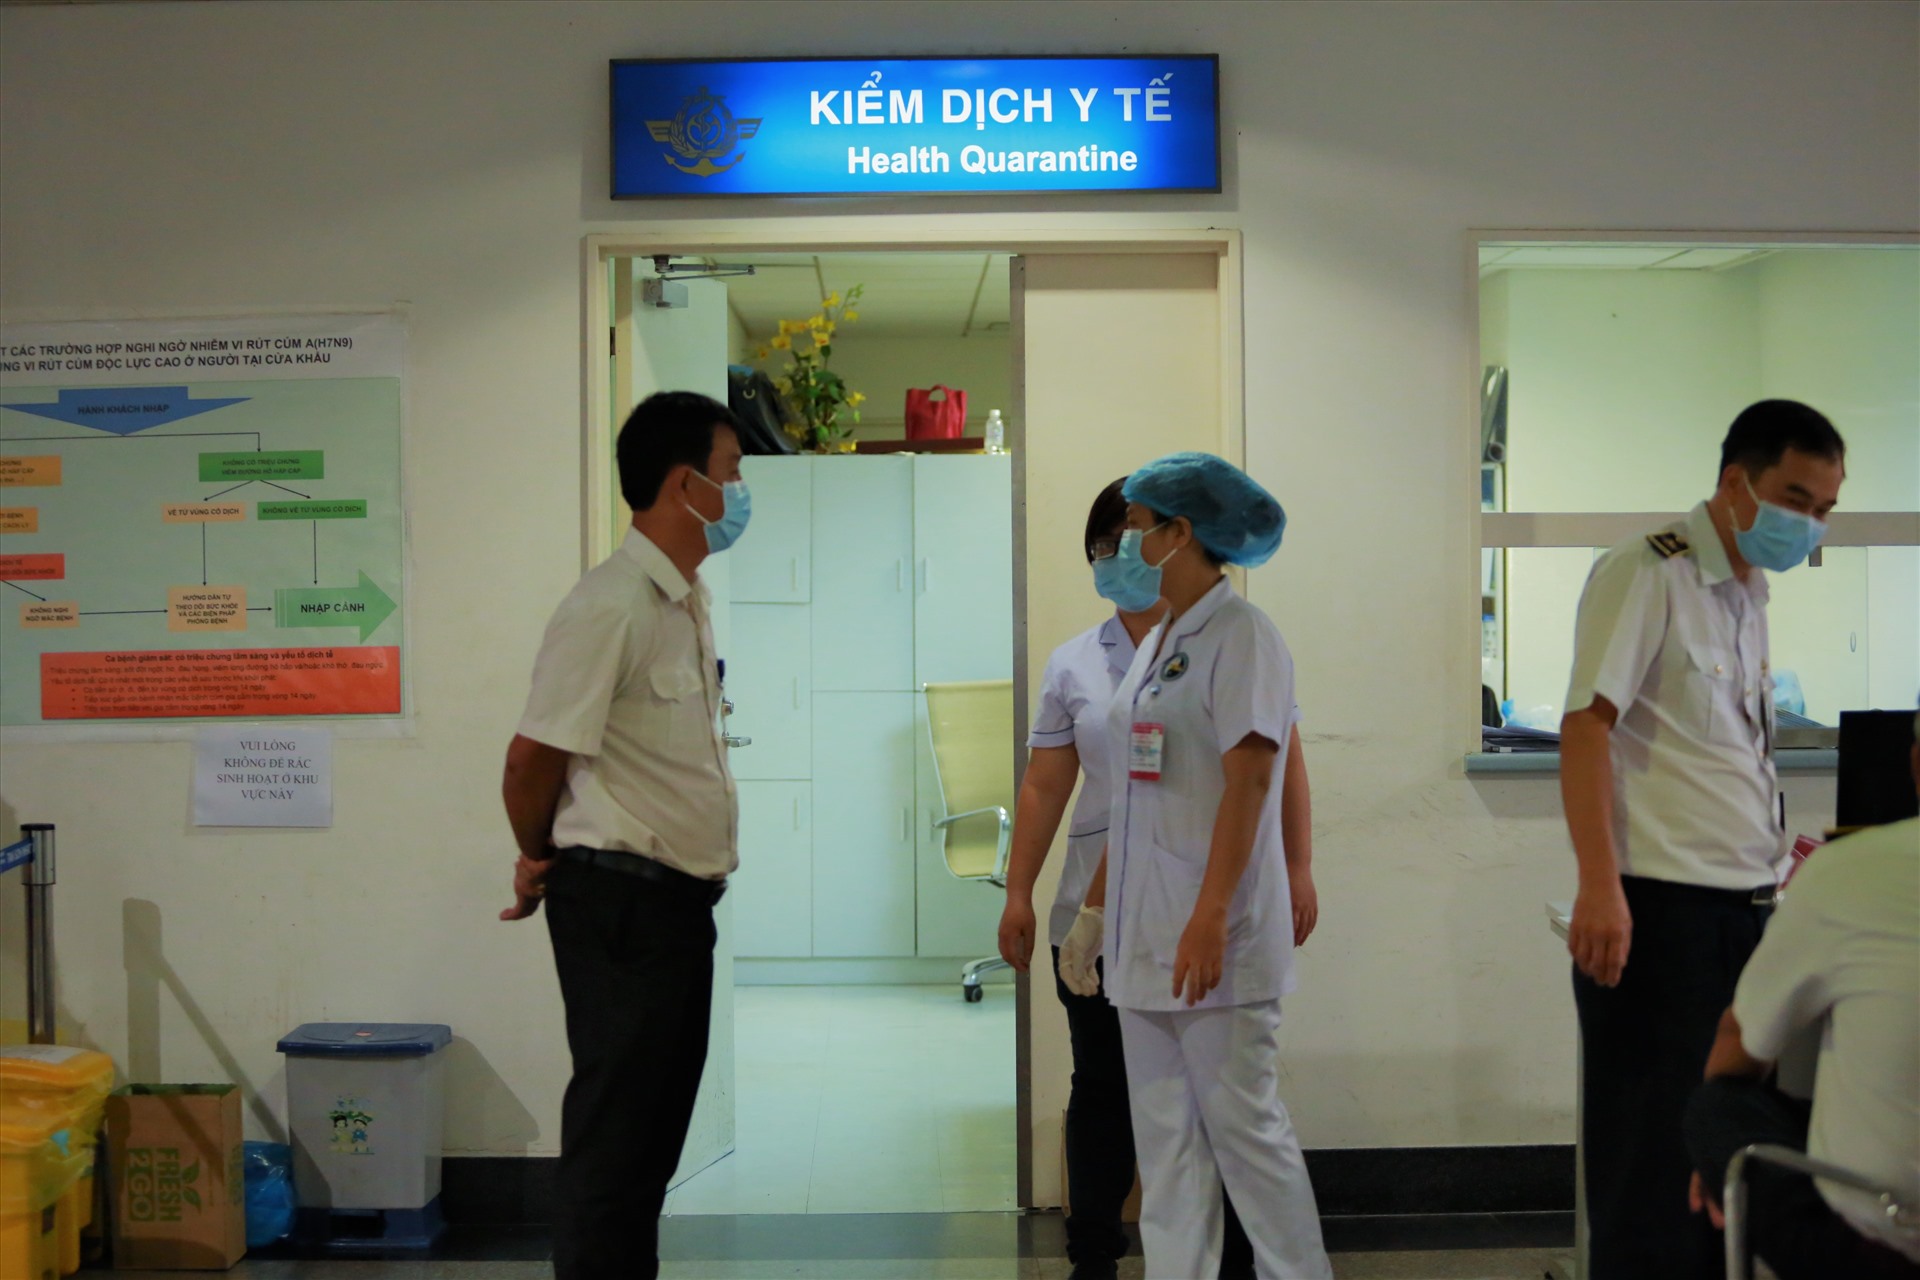 Những ngày ngày, Trung tâm kiểm dịch y tế quốc tế tại TPHCM luôn bố trí đầy đủ đội ngũ y bác sĩ luôn thường trực tại sân bay Tân Sơn Nhất thay phiên nhau trực chiến  . Đặc biệt, tại đây còn bố trí các xe cách ly để phục vụ khi có các tình huống đặc biệt xảy ra.